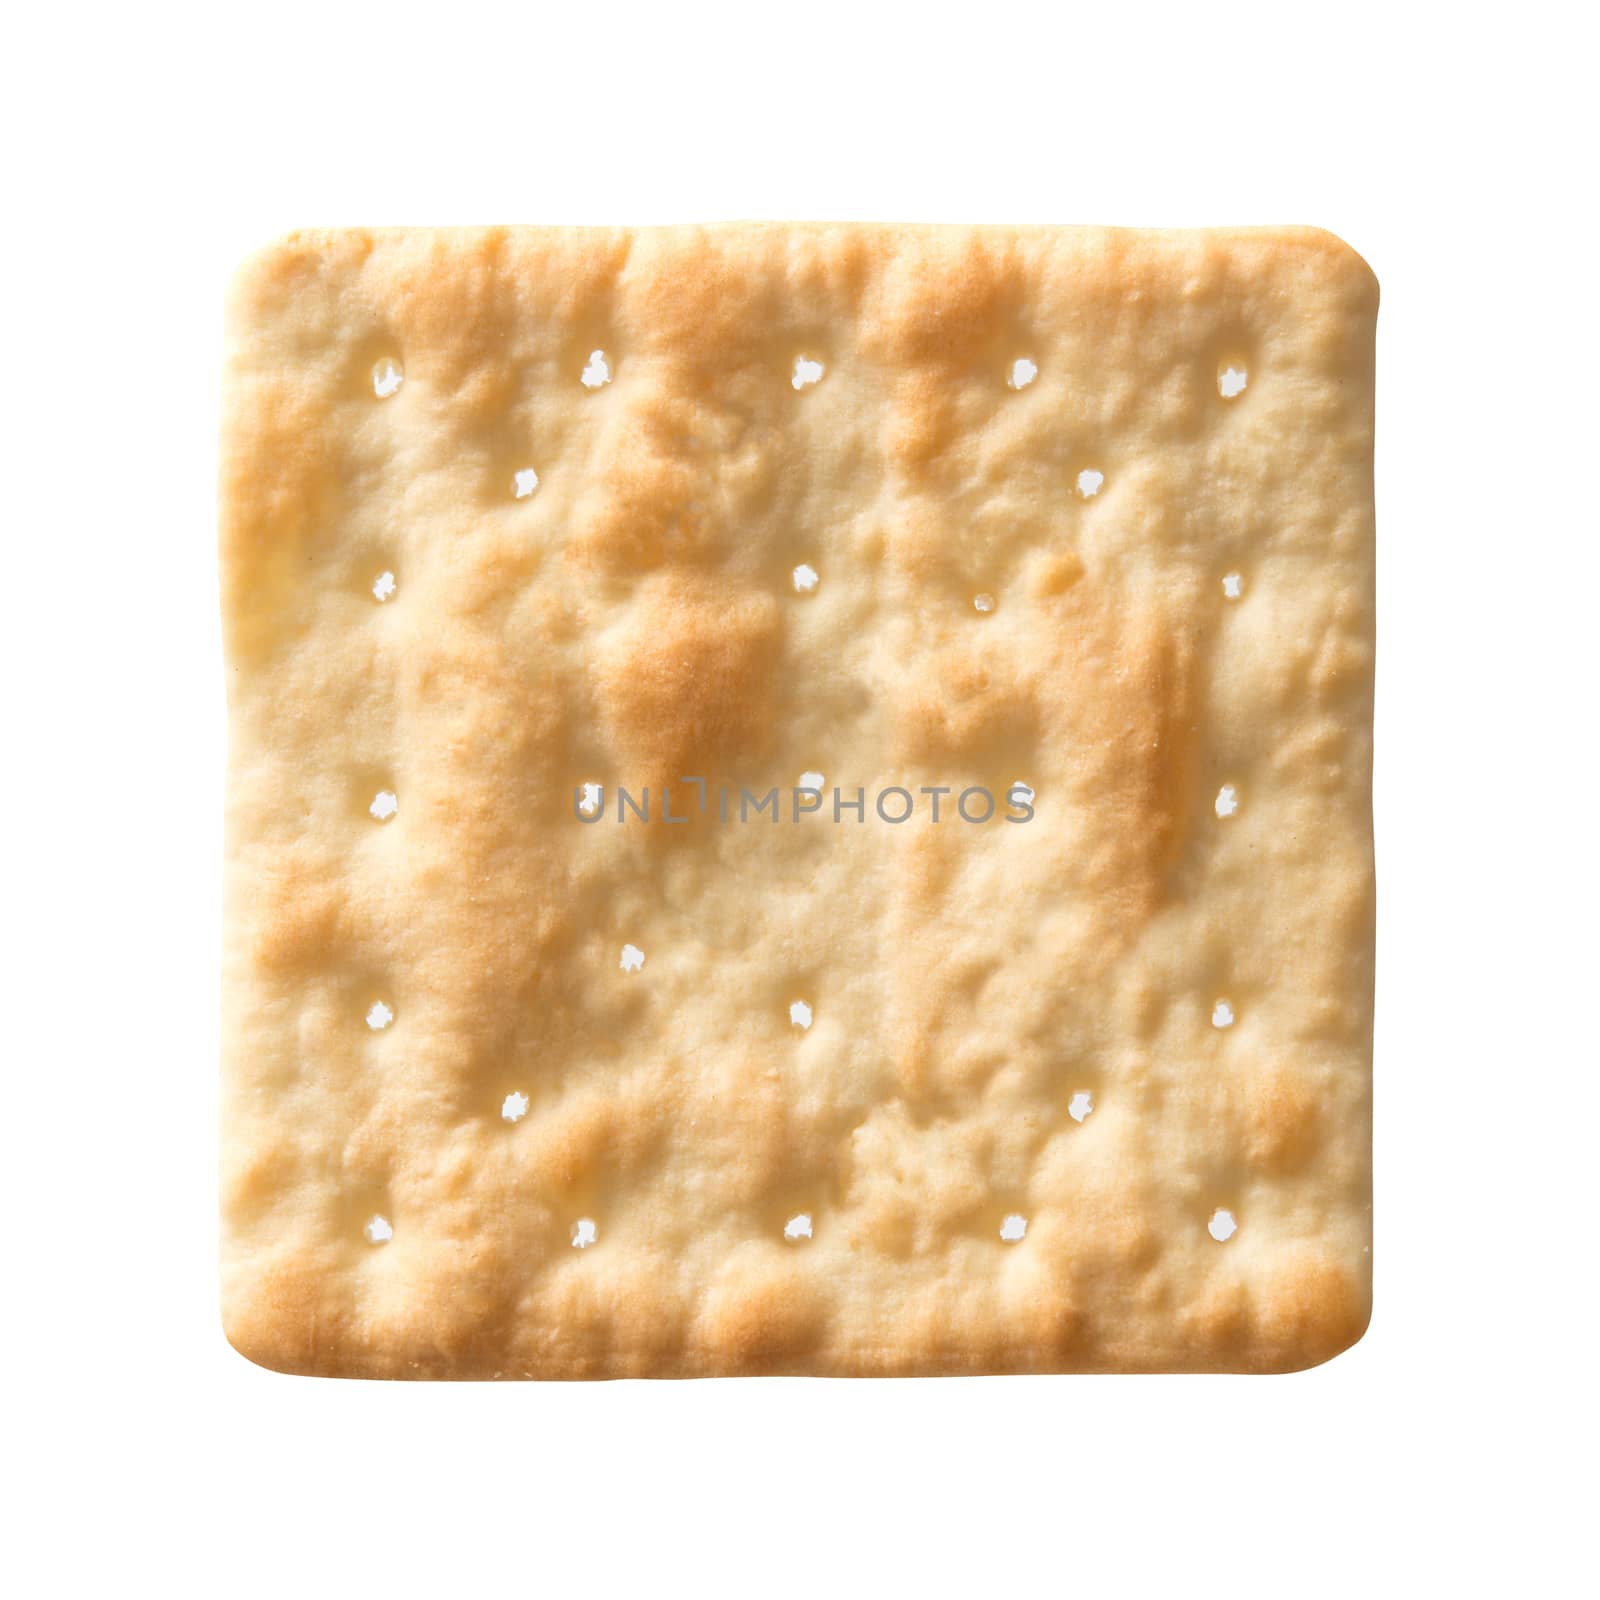 Square soda cracker isolated on white background.